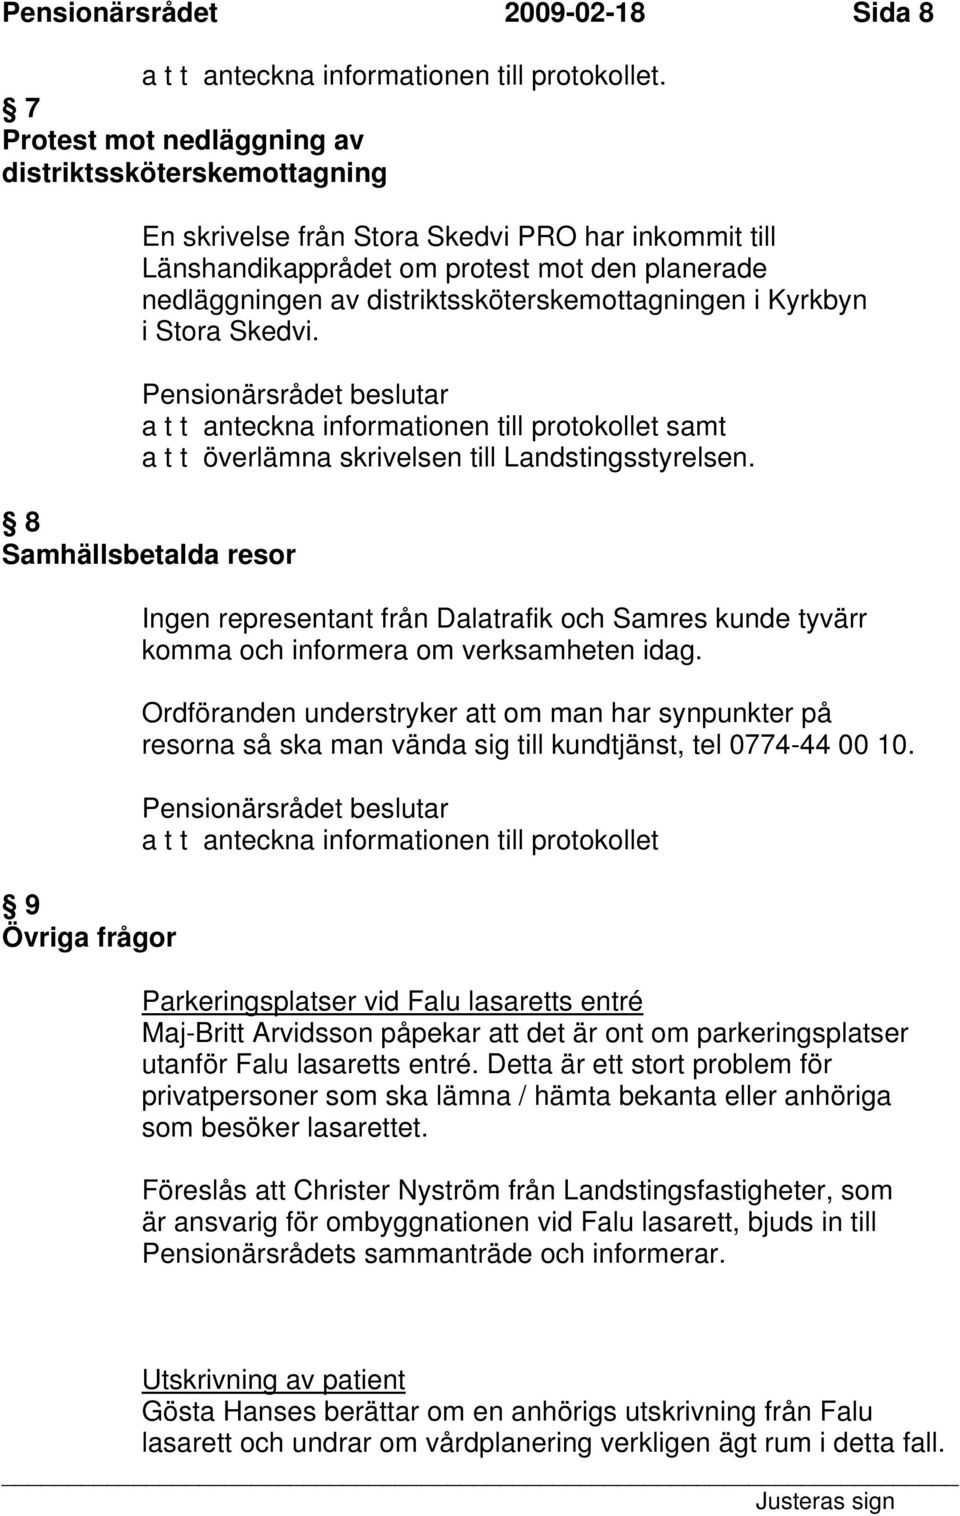 distriktssköterskemottagningen i Kyrkbyn i Stora Skedvi. a t t anteckna informationen till protokollet samt a t t överlämna skrivelsen till Landstingsstyrelsen.